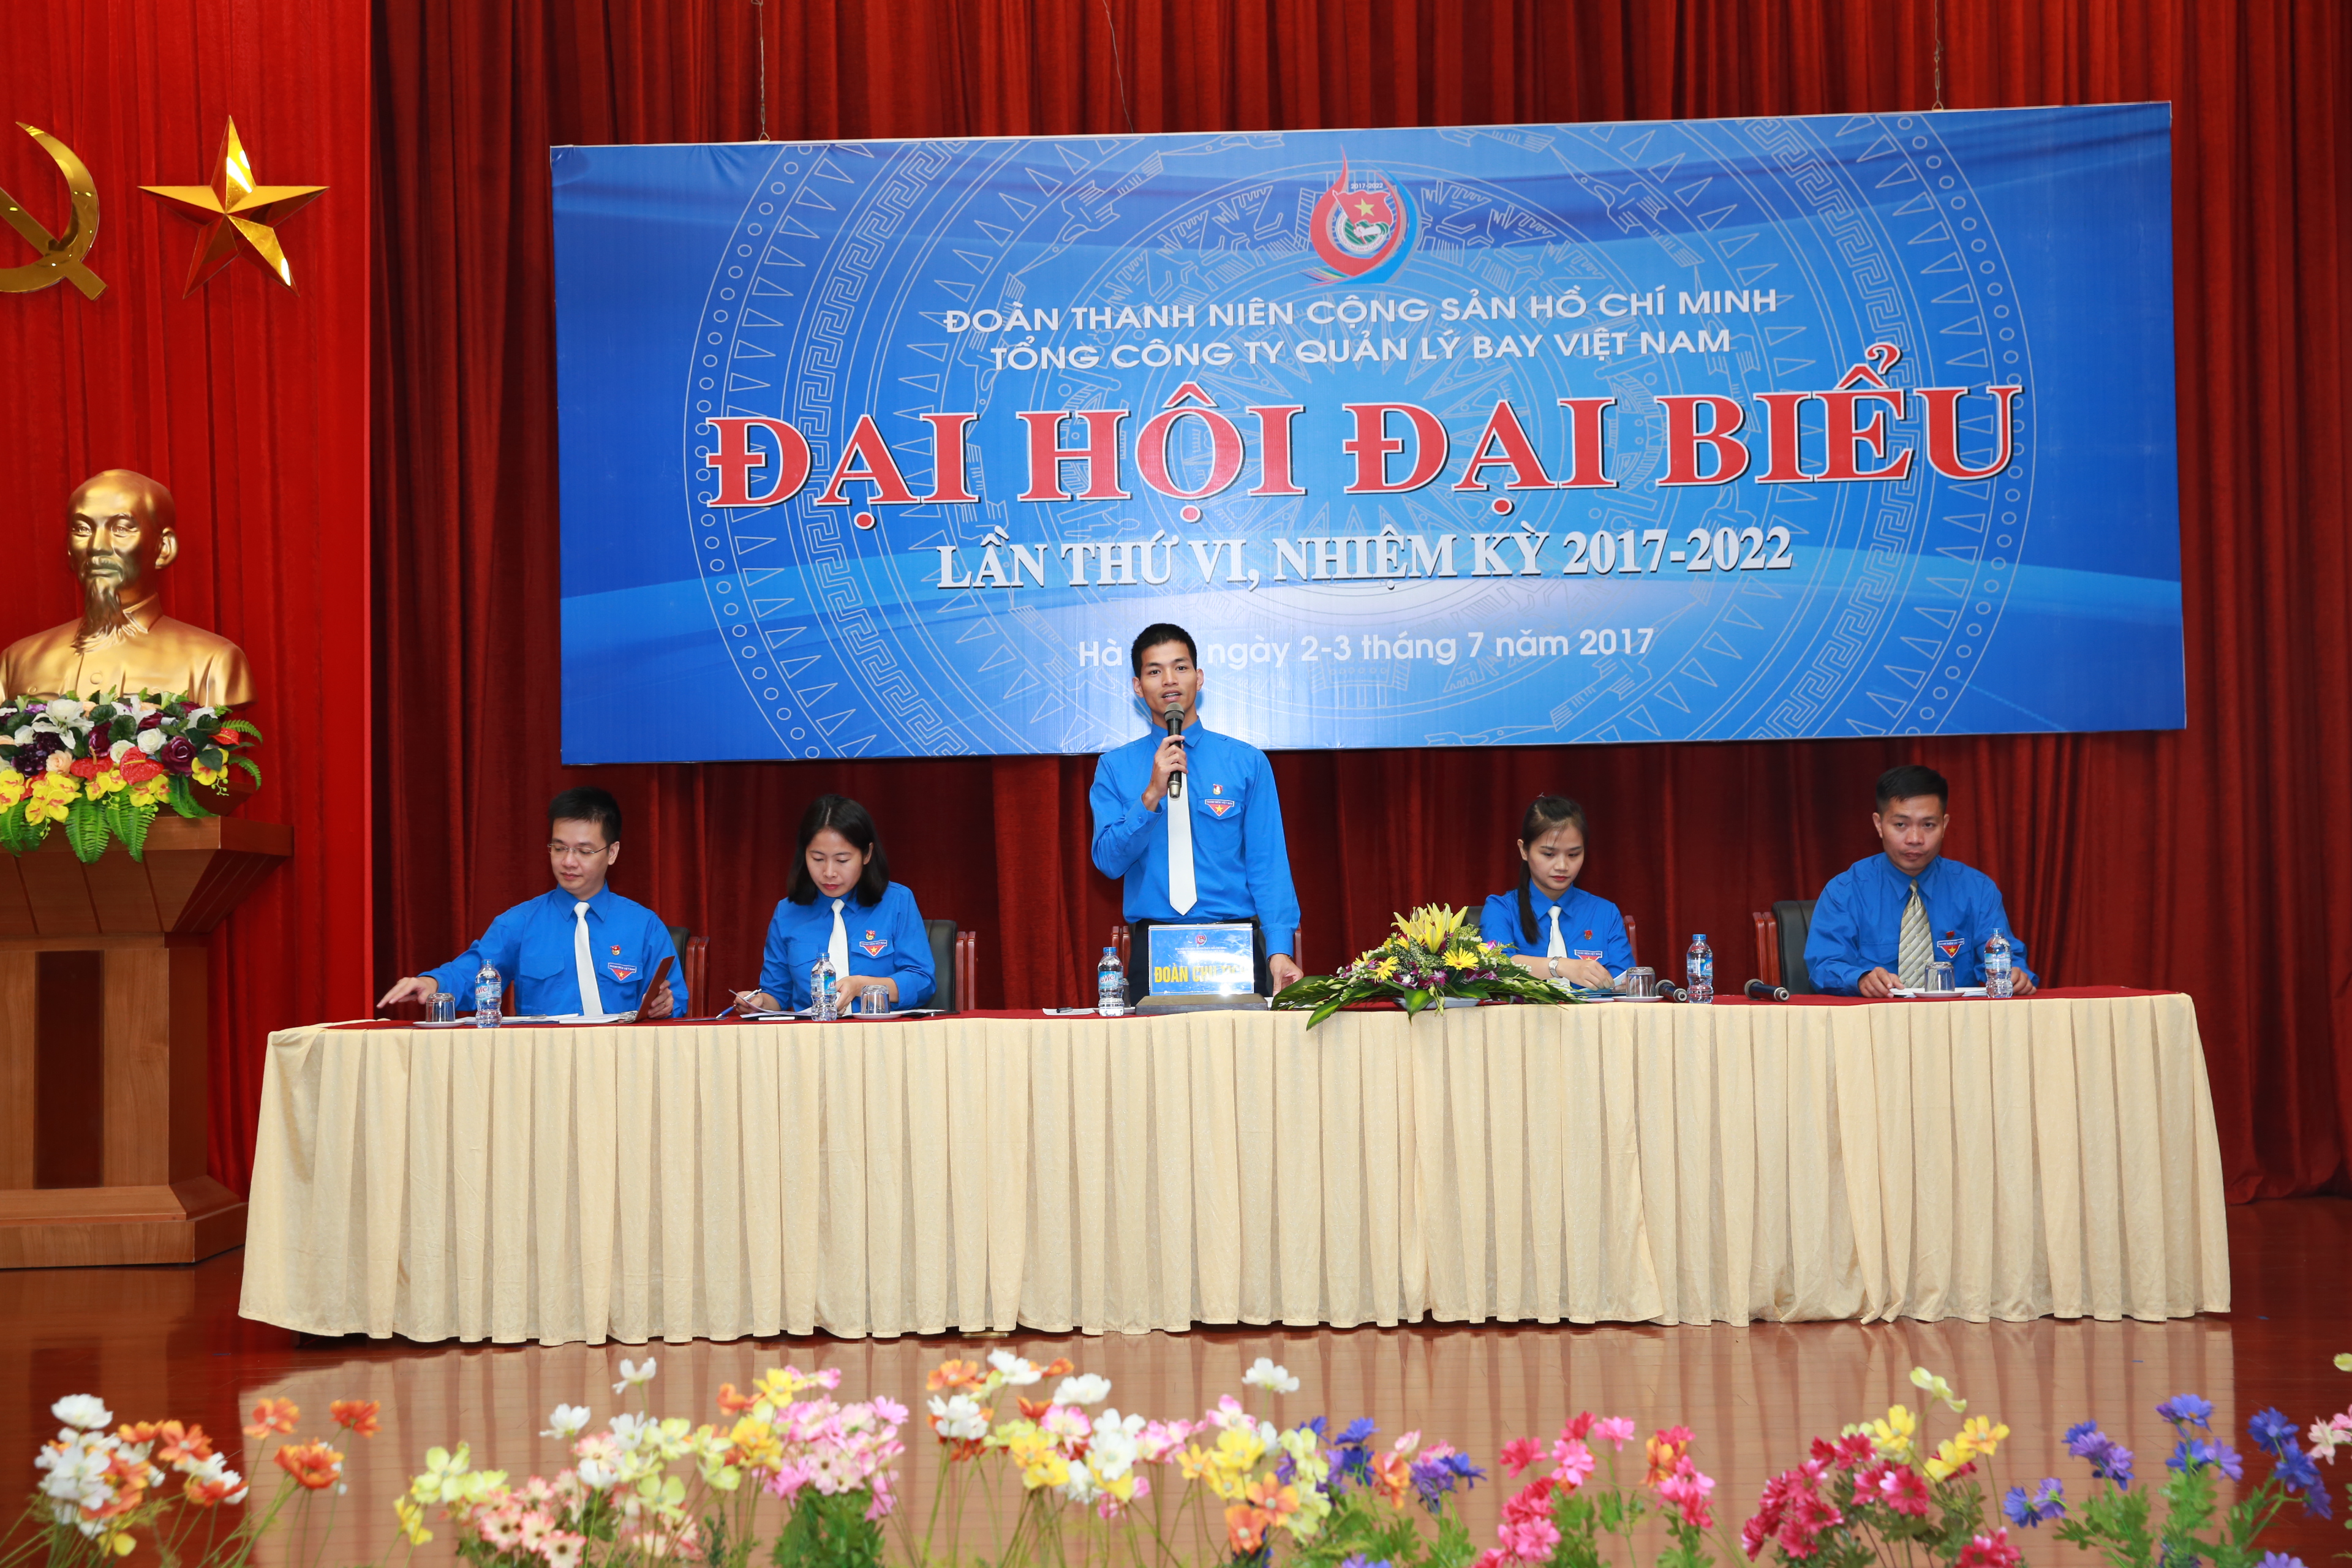 Đại hội đại biểu Đoàn Thanh niên Cộng sản Hồ Chí Minh Tổng công ty Quản lý bay Việt Nam lần thứ VI, nhiệm kỳ 2017 – 2022